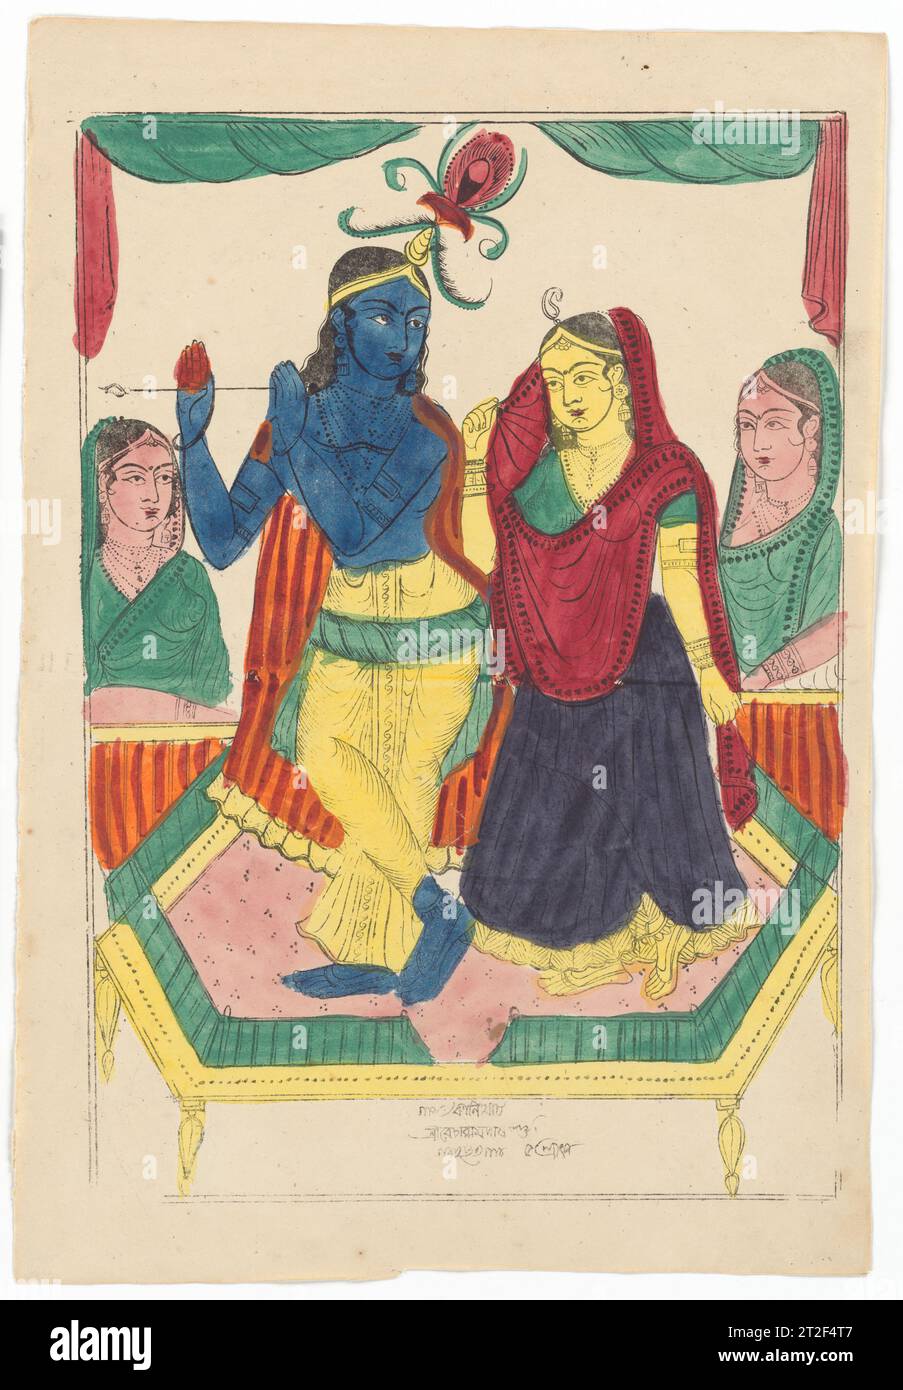 Krishna e Radha Becharam Das Dutta datati all'equivalente del 20 luglio 1856 Krishna è rappresentata qui come il flauto che suona il Signore, Venugopal, affascinante il suo amante la gopi (cameriera) Radha con musica dolce. Gli amanti sono visti insieme su un dais dorato in un interno incorniciato da tende disegnate, un ambiente piuttosto suggestivo di scenografie e studi fotografici. Un paio di gopi li assistono. Questo soggetto molto favorito è più tipicamente situato in una radura forestale, lo scenario per la tristezza di Krishna e Radha. L'incontro romantico del divino Krishna e della mucca mortale alimentarono Vaishnava d Foto Stock